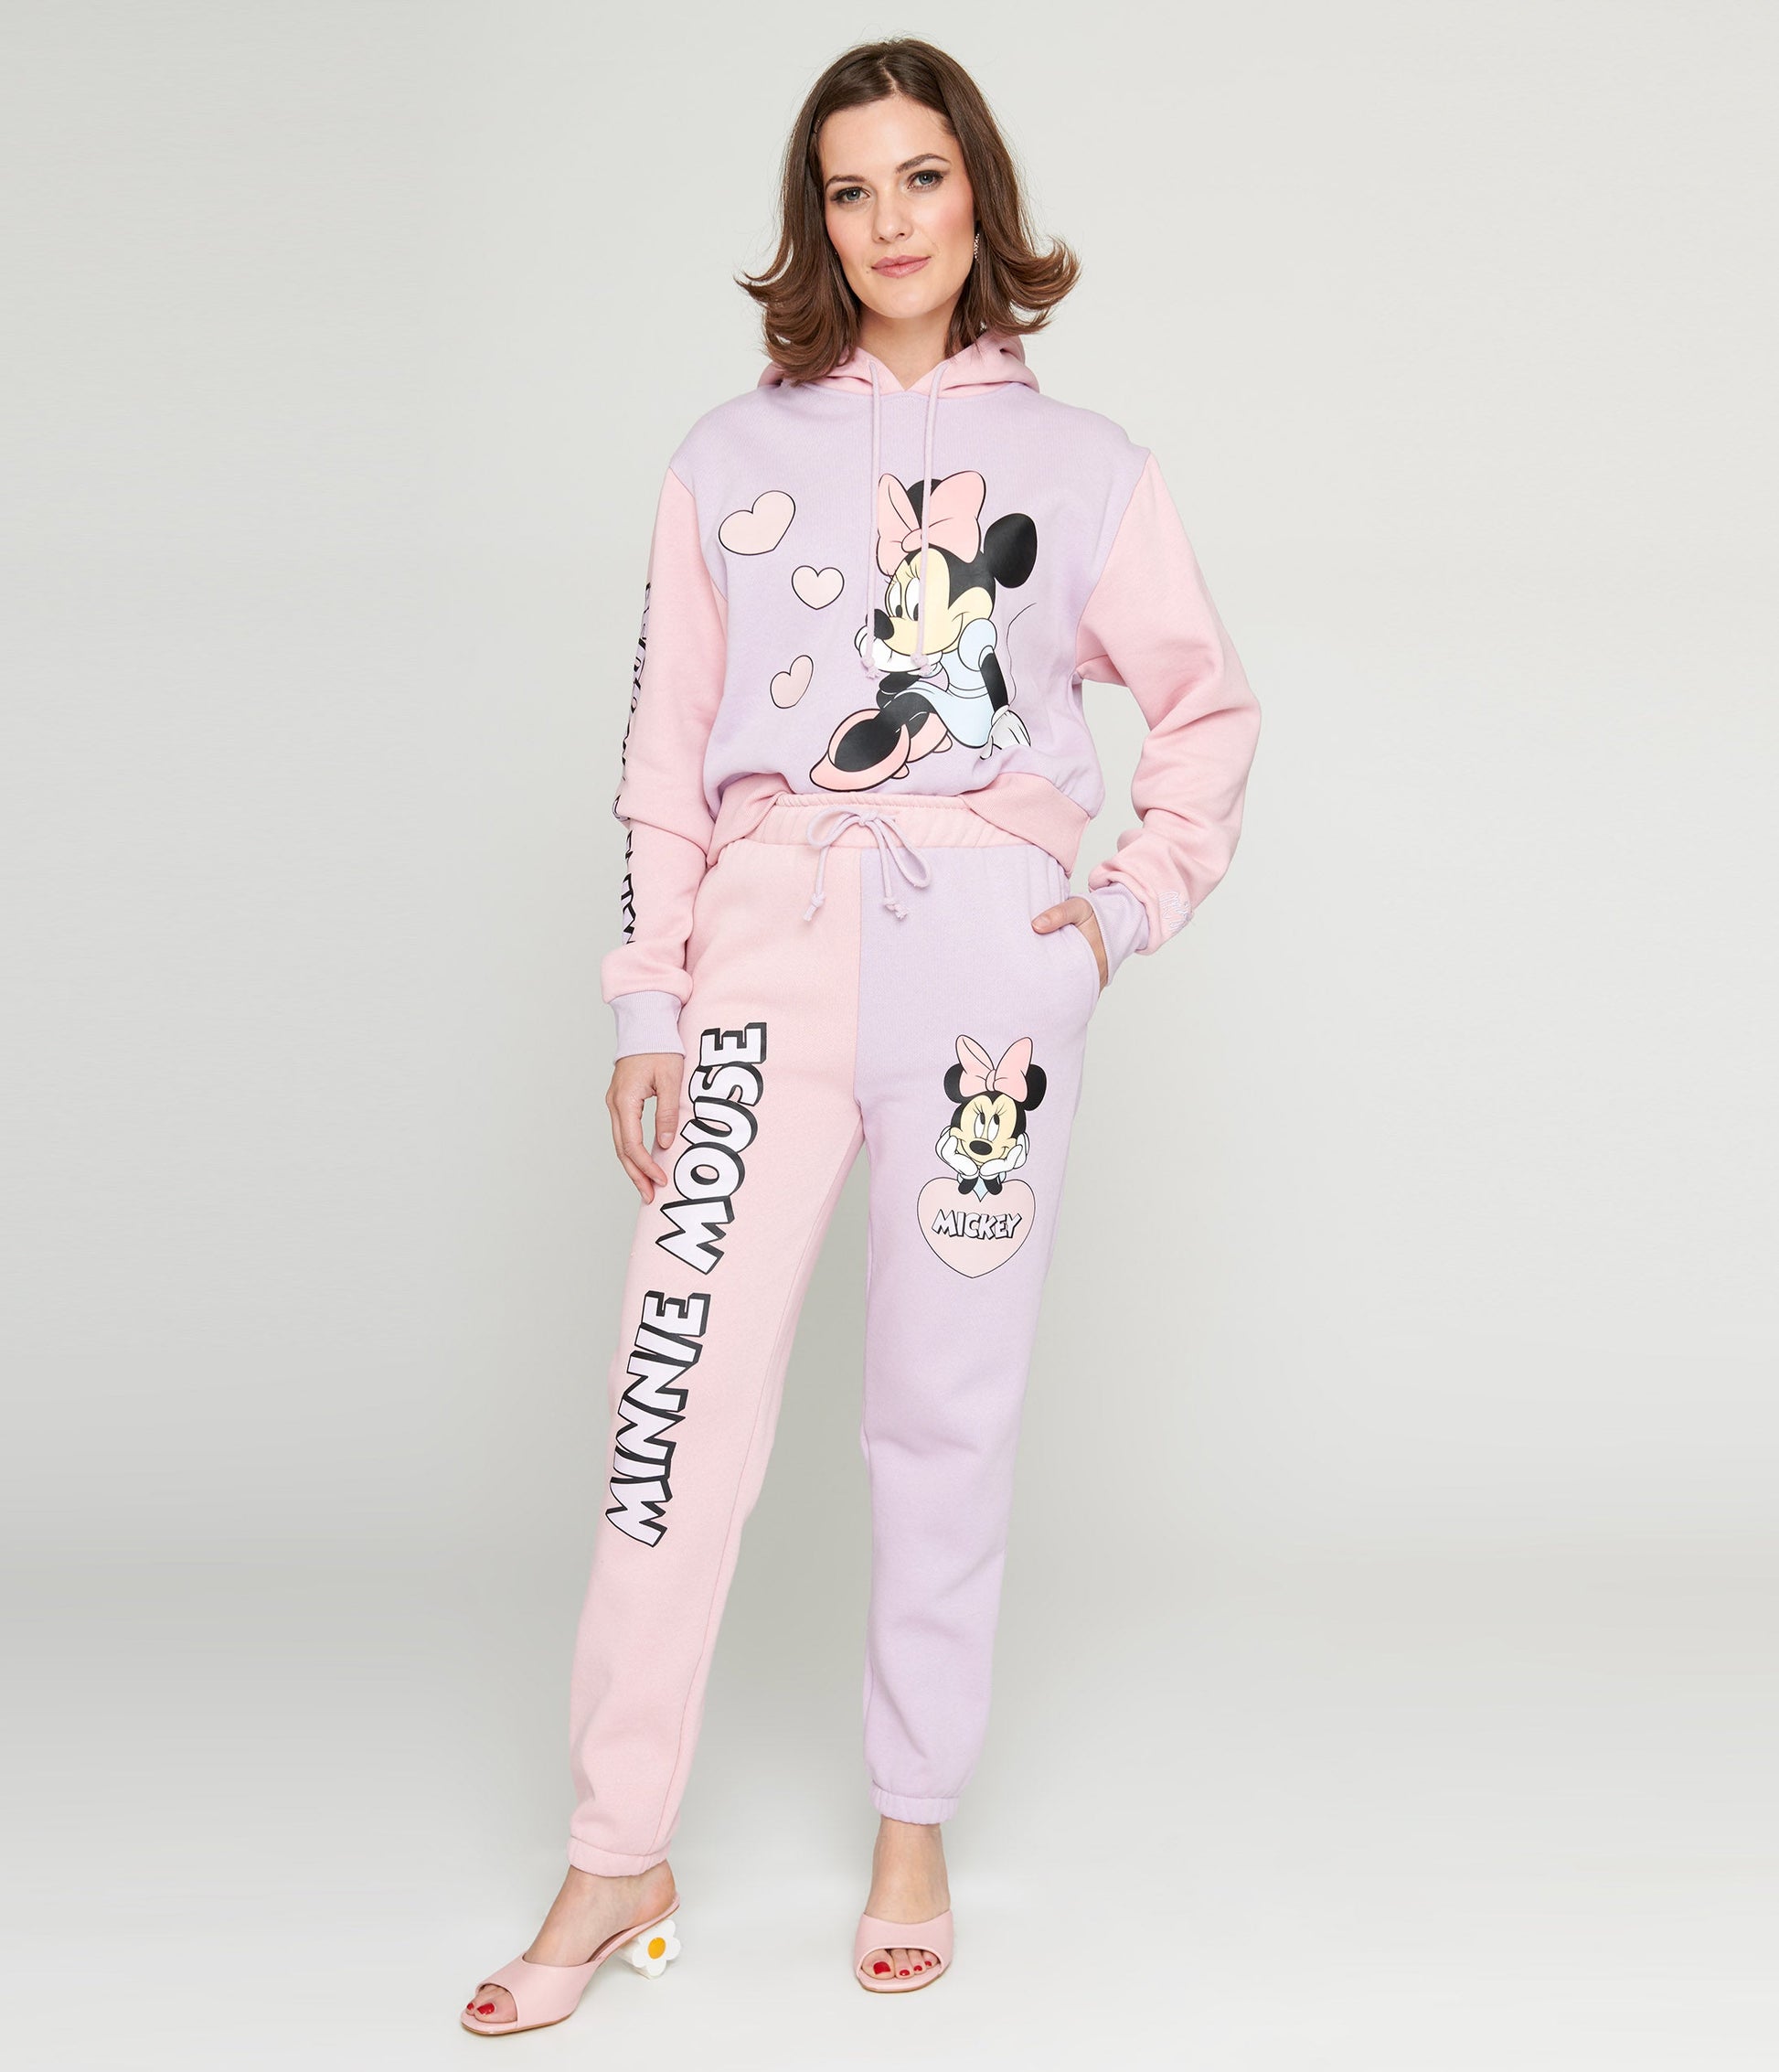 Minnie Mouse sweatpants Color pastel pink - SINSAY - 9714C-03X